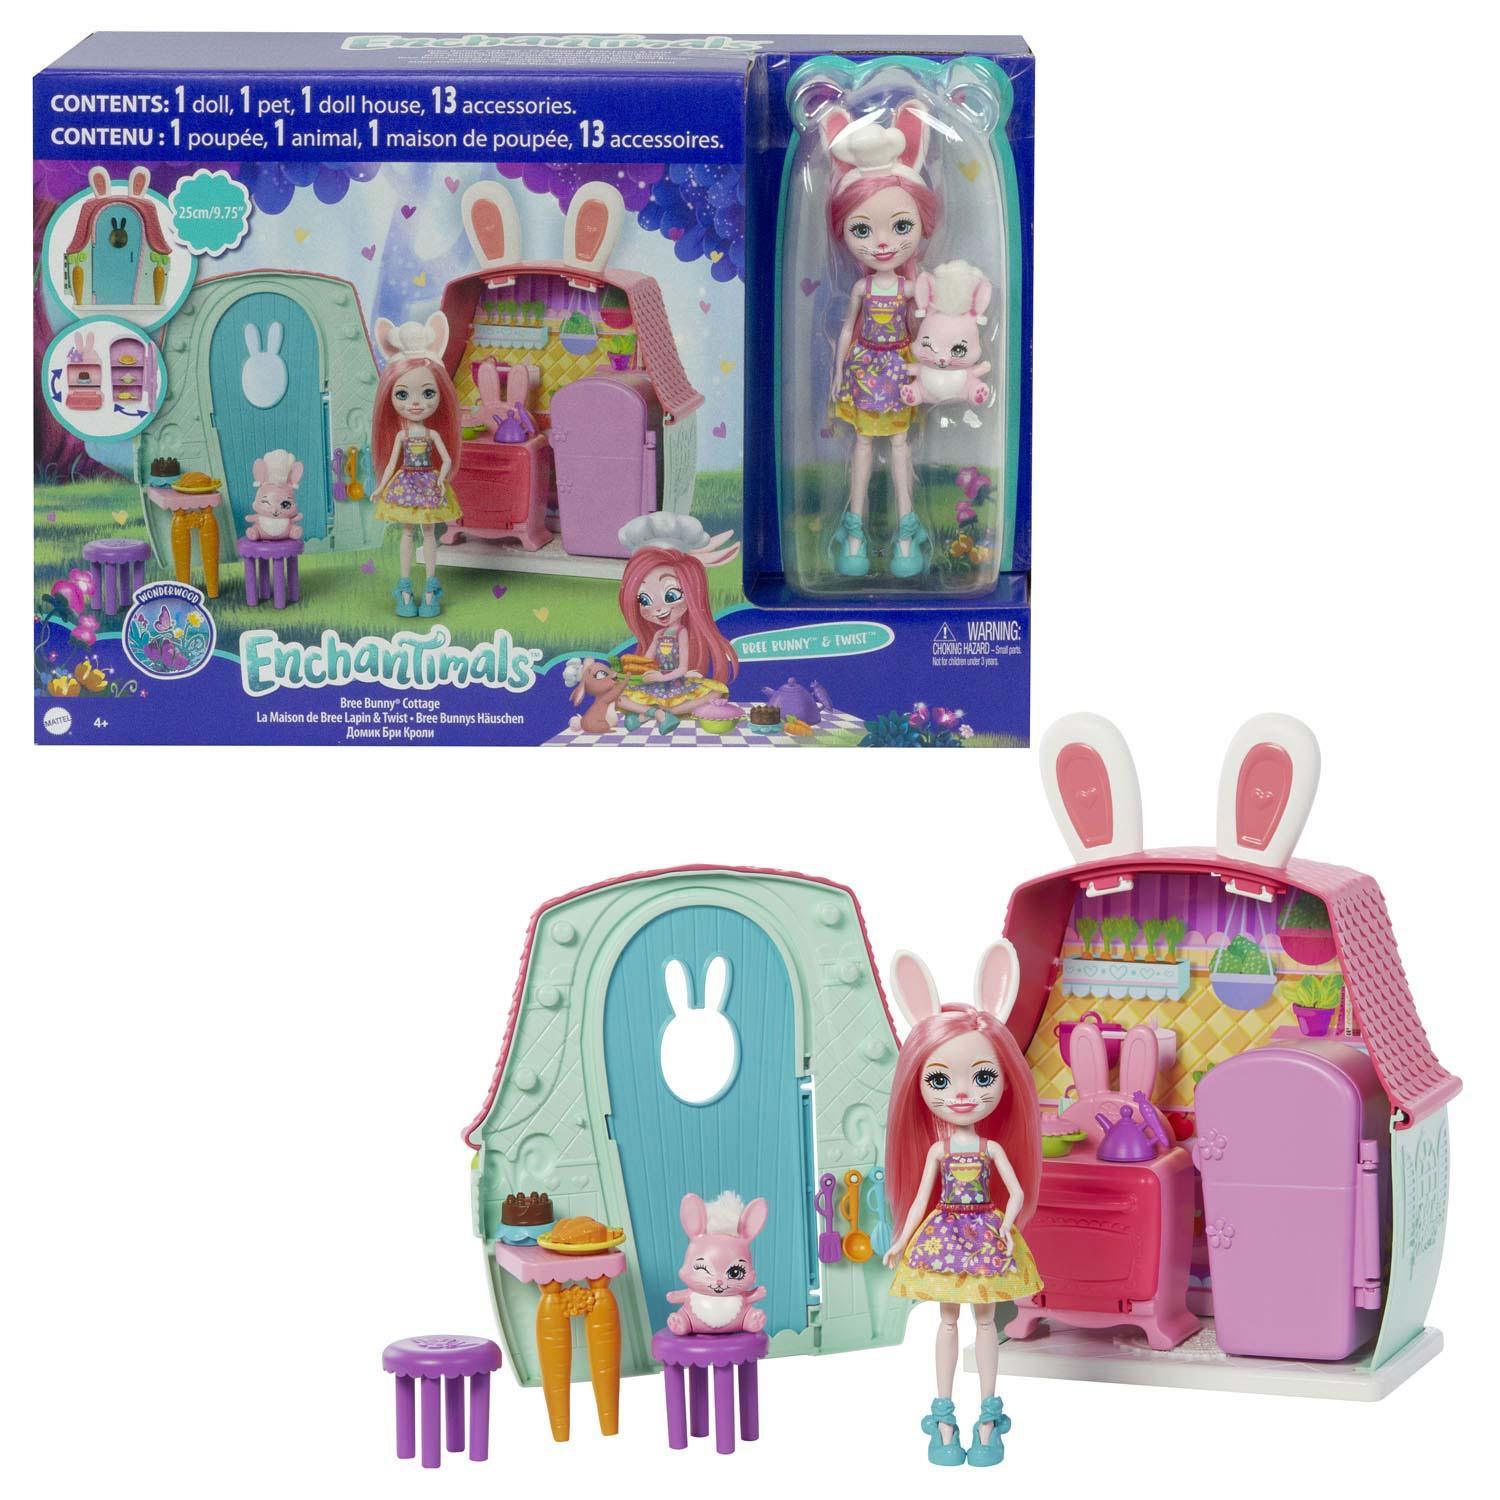 Enchantimals Bree Bunny Cabin Multicolor